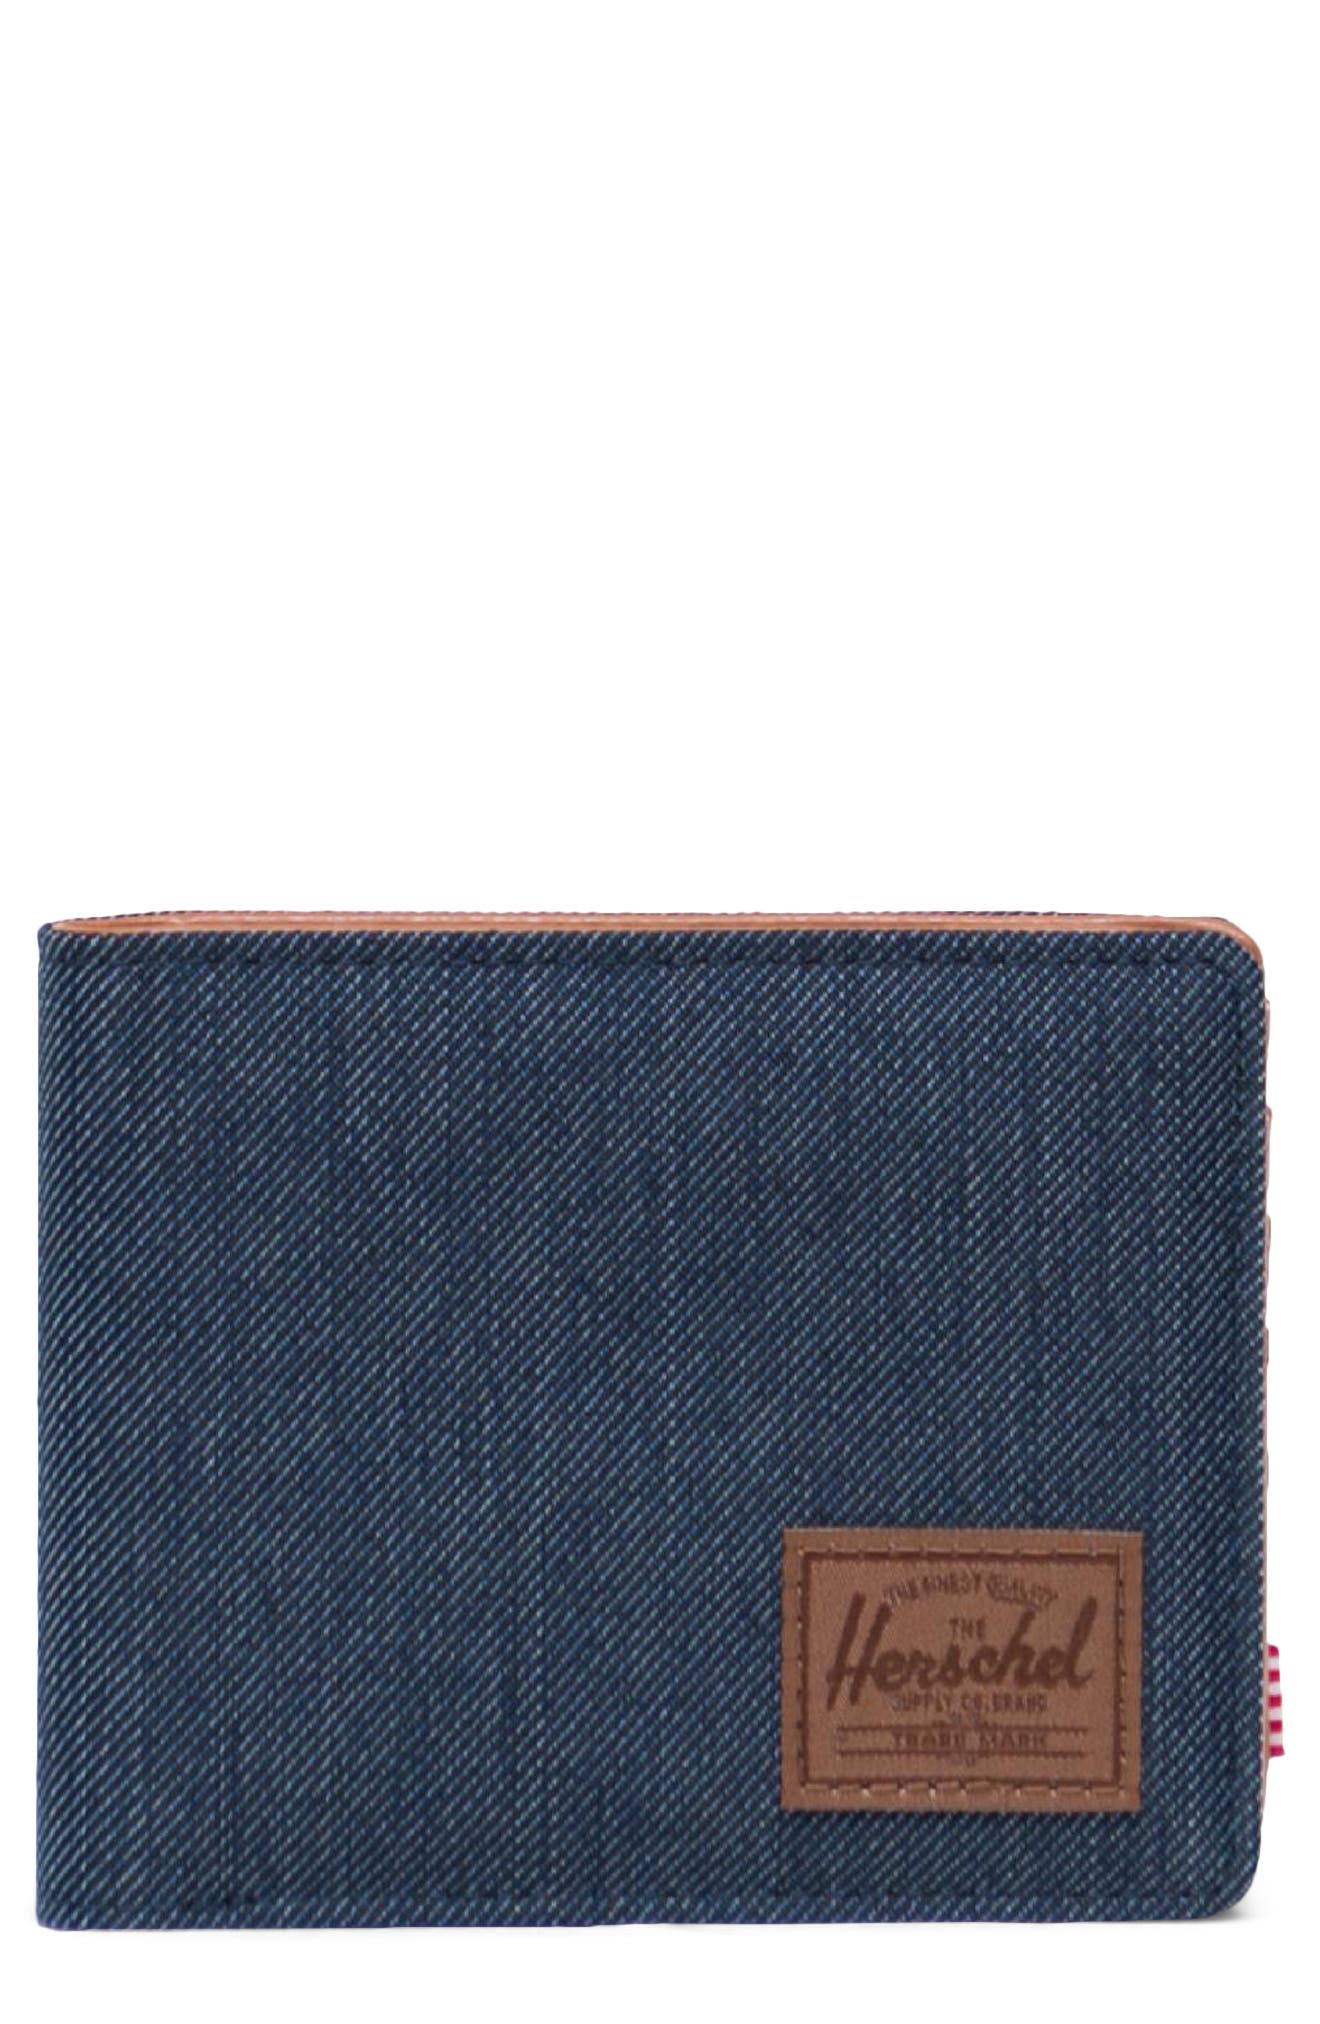 Herschel Supply Co Hank Rfid Bifold Wallet In Indigo Denim Crosshatch/brown